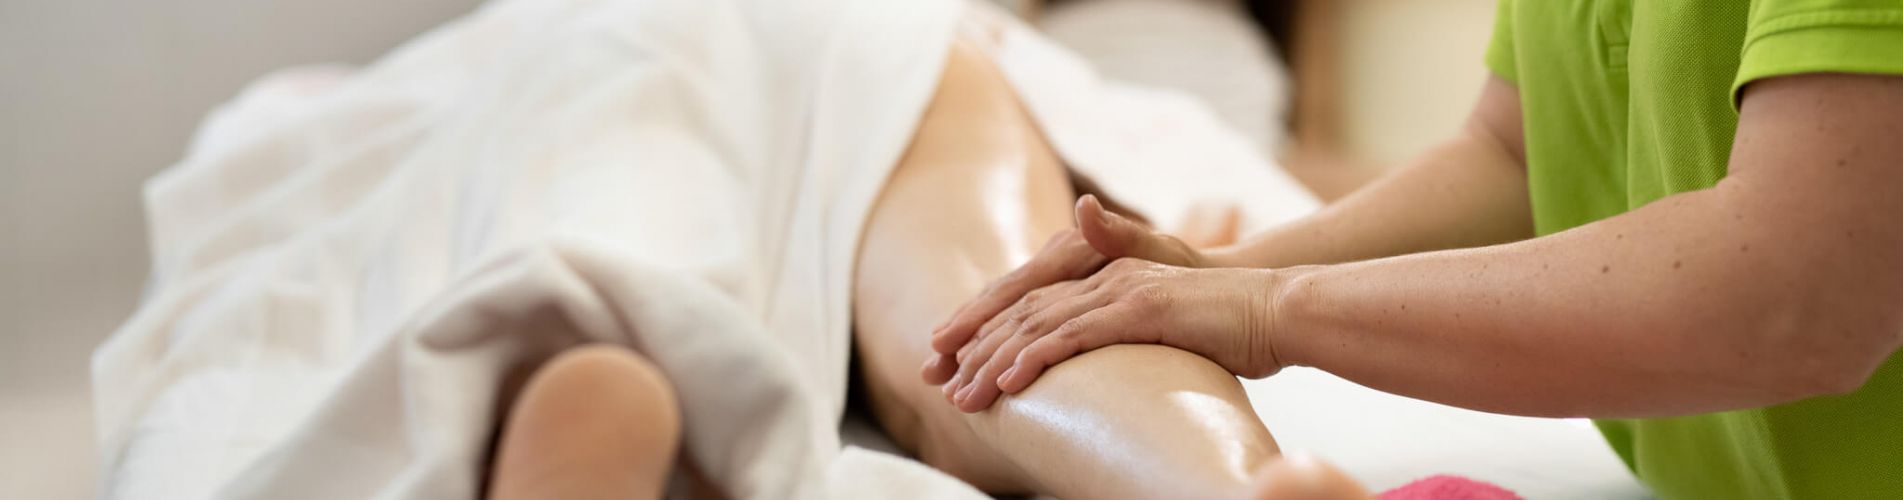 Massage und Wellness im Wellnesshotel im Bayerischen Wald